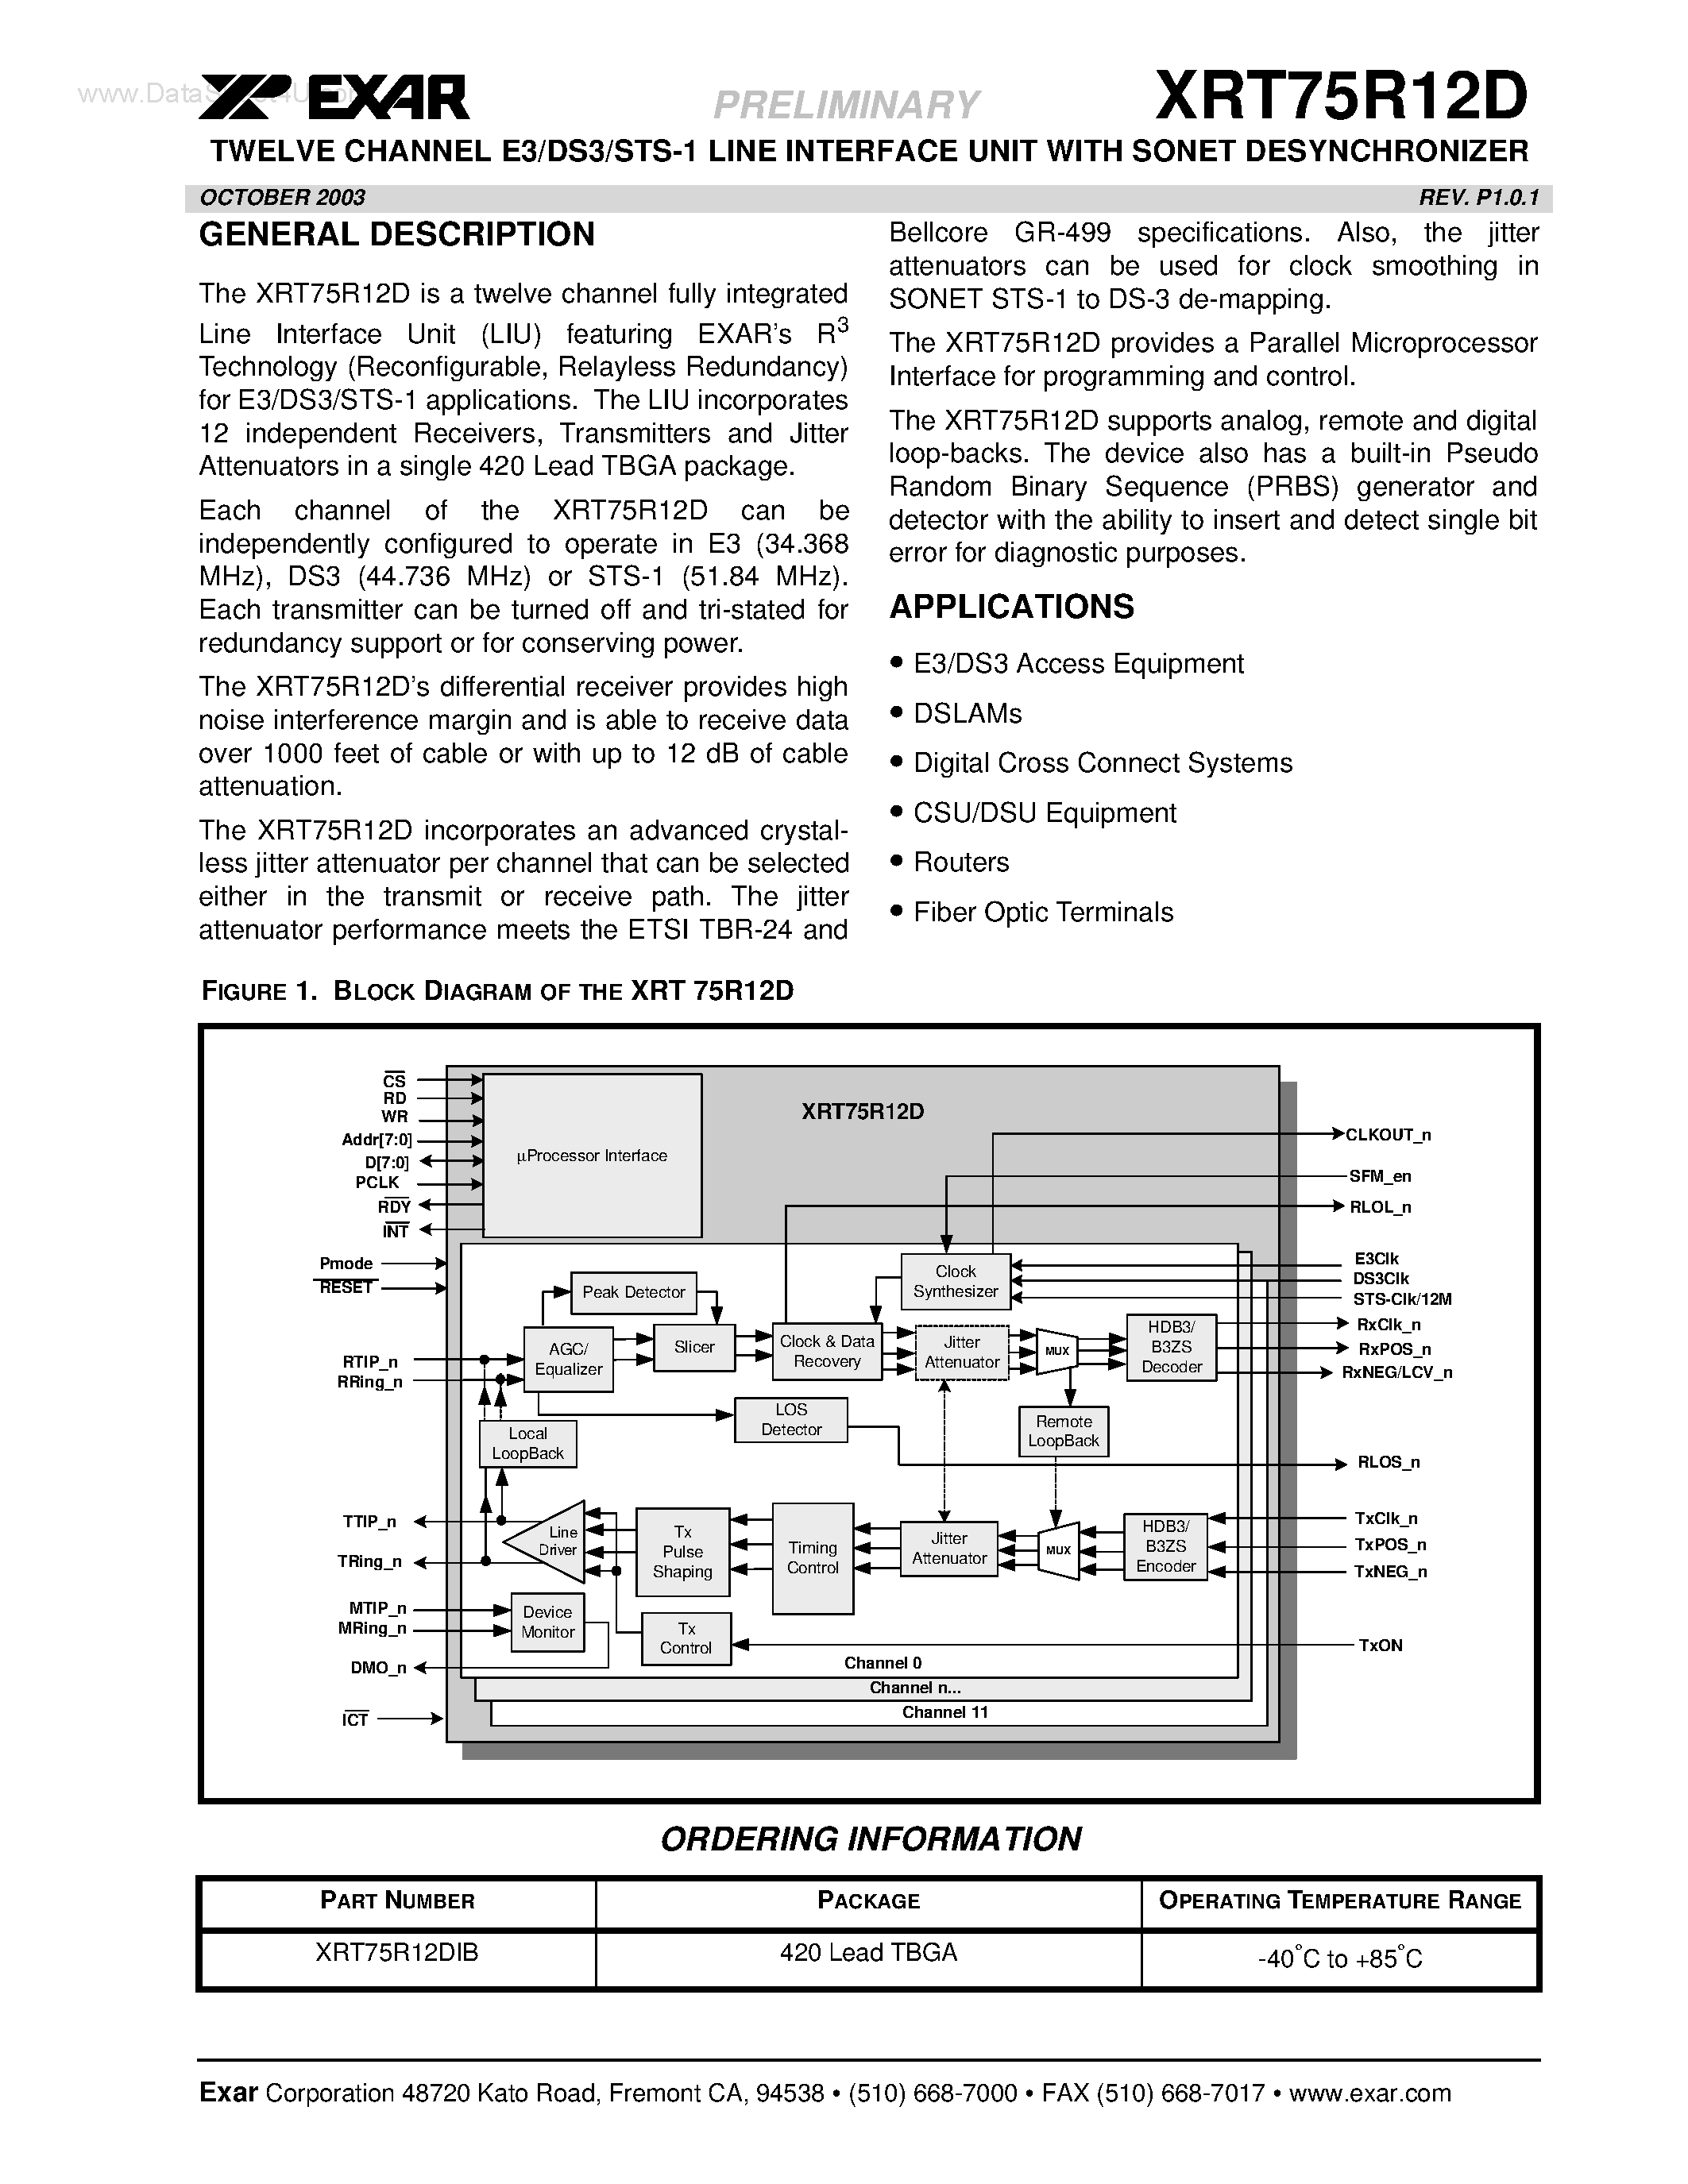 Даташит XRT75R12D - TWELVE CHANNEL E3/DS3/STS-1 LINE INTERFACE UNIT страница 1